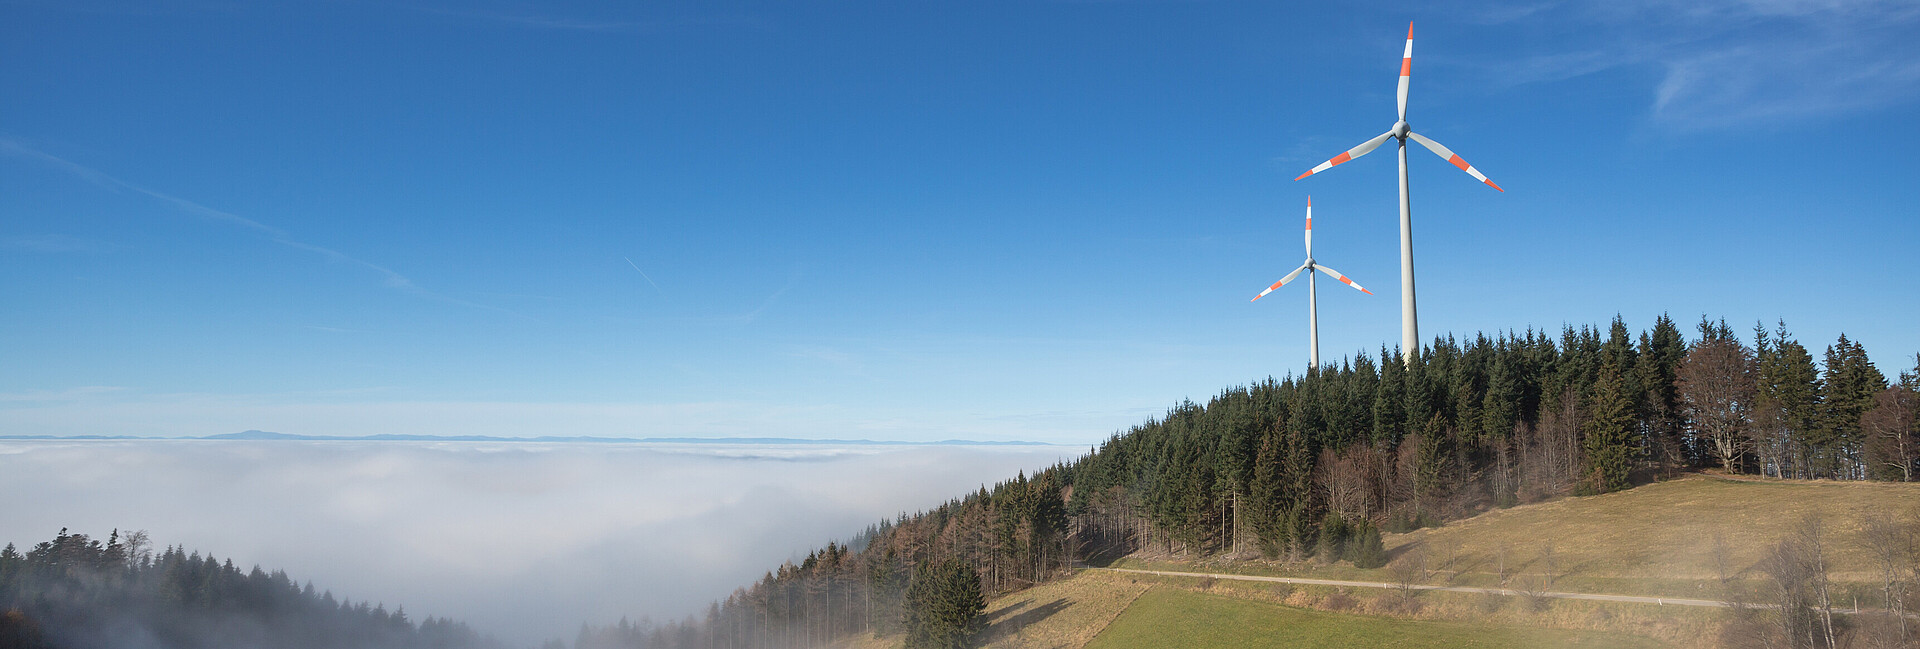 Windkraftwerke über Nebel im Schwarzwald